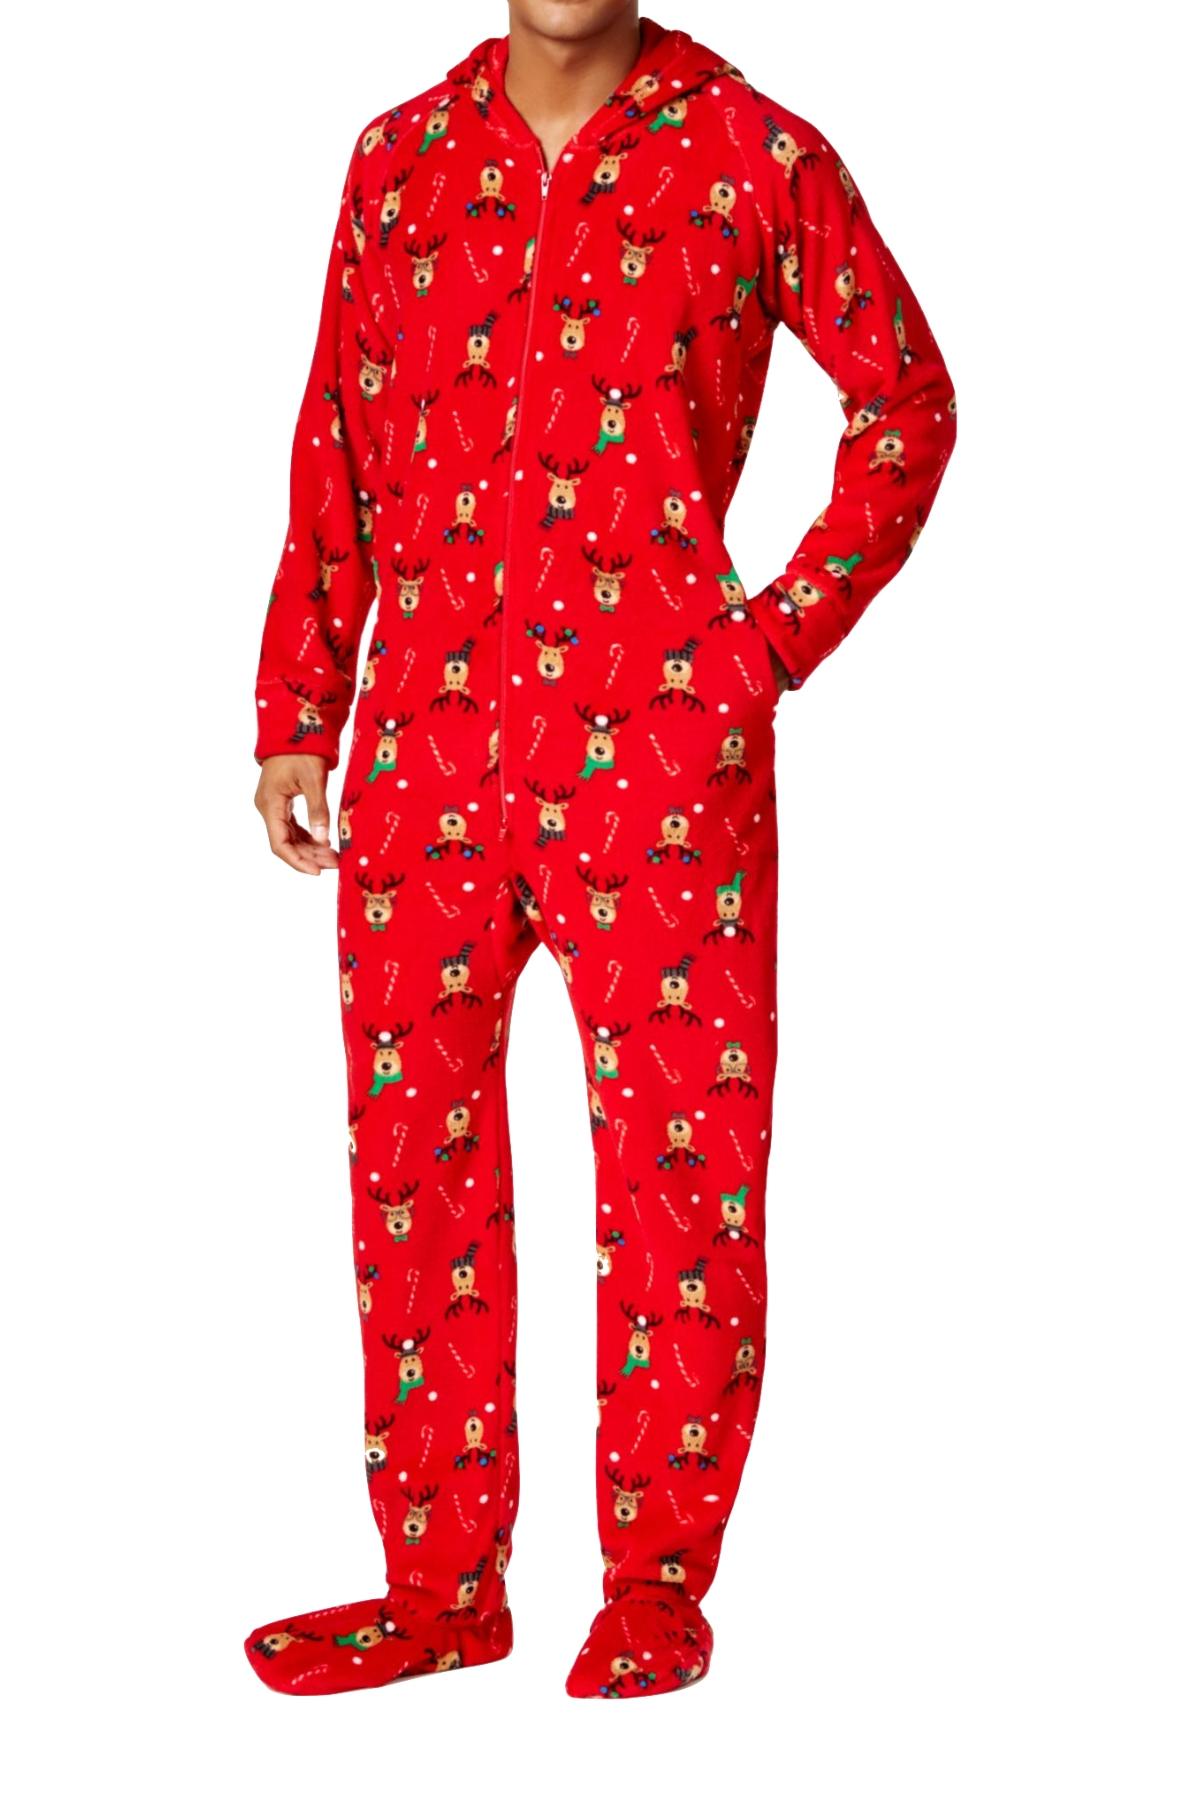 Family PJs Men Hooded Footed Pajama Onesie in Reindeer Red | CheapUndies